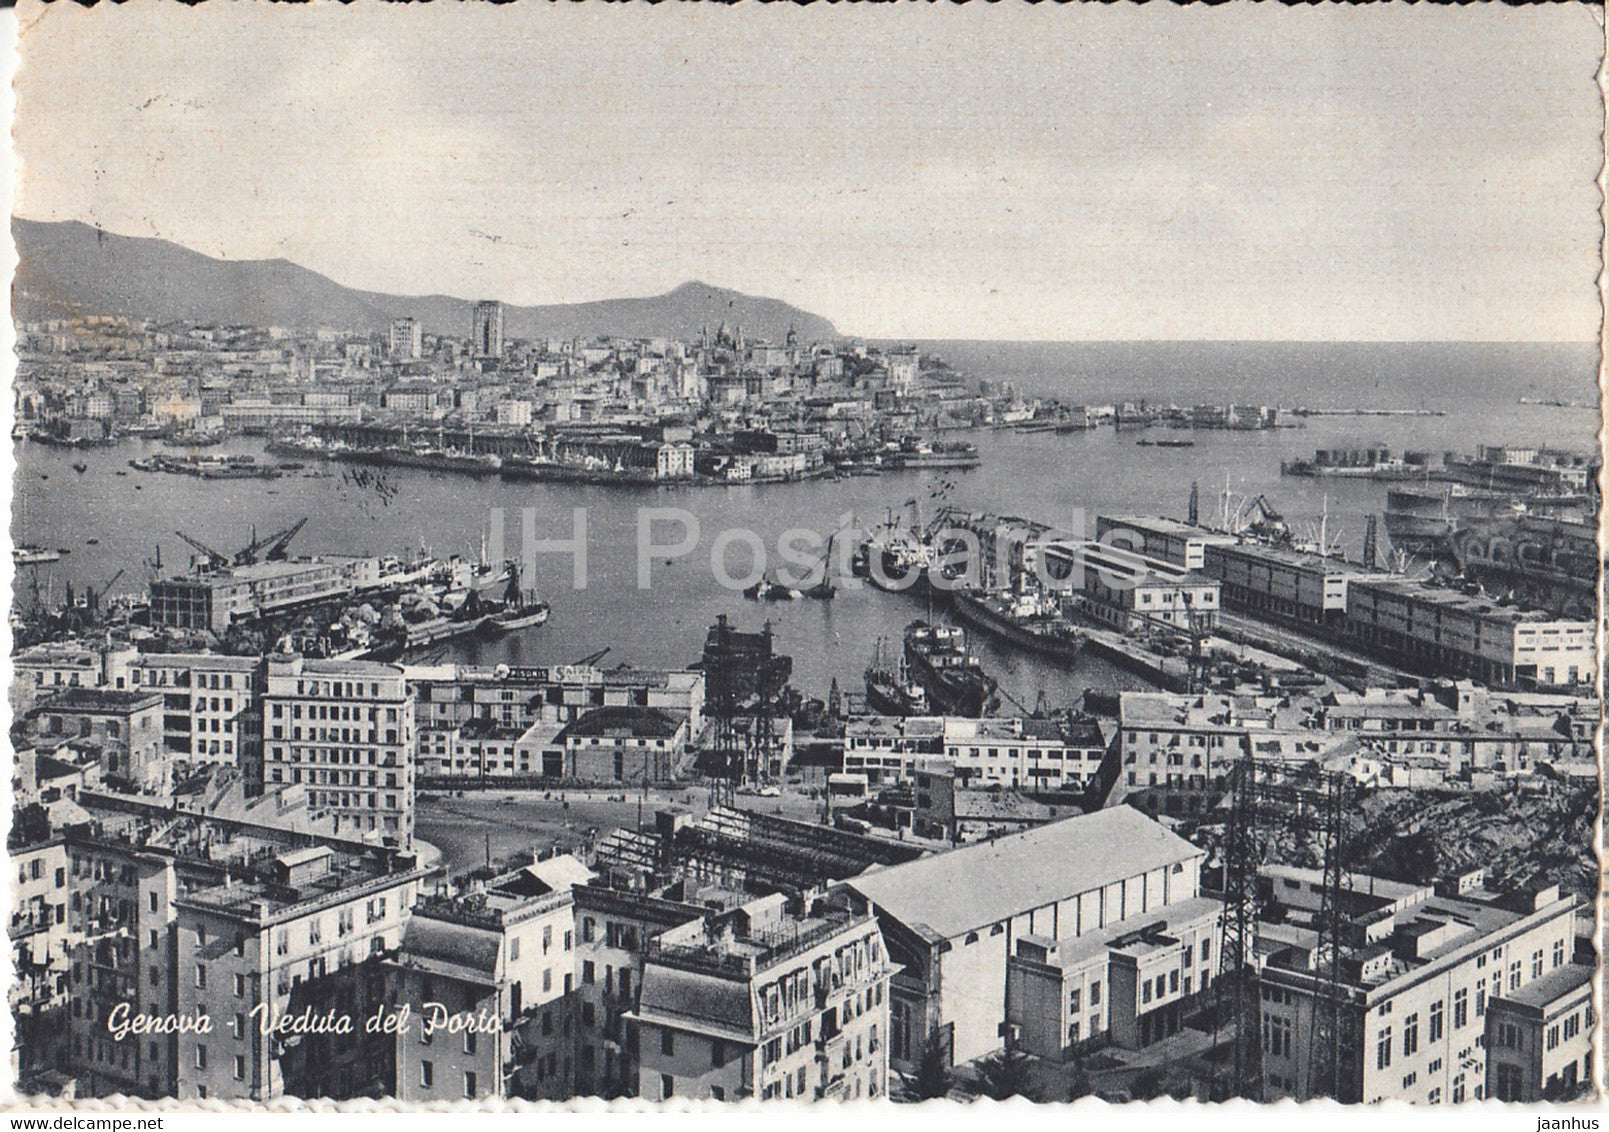 Genova - Genoa - Veduta del Porto - port - ship - old postcard - 1955 - Italy - used - JH Postcards